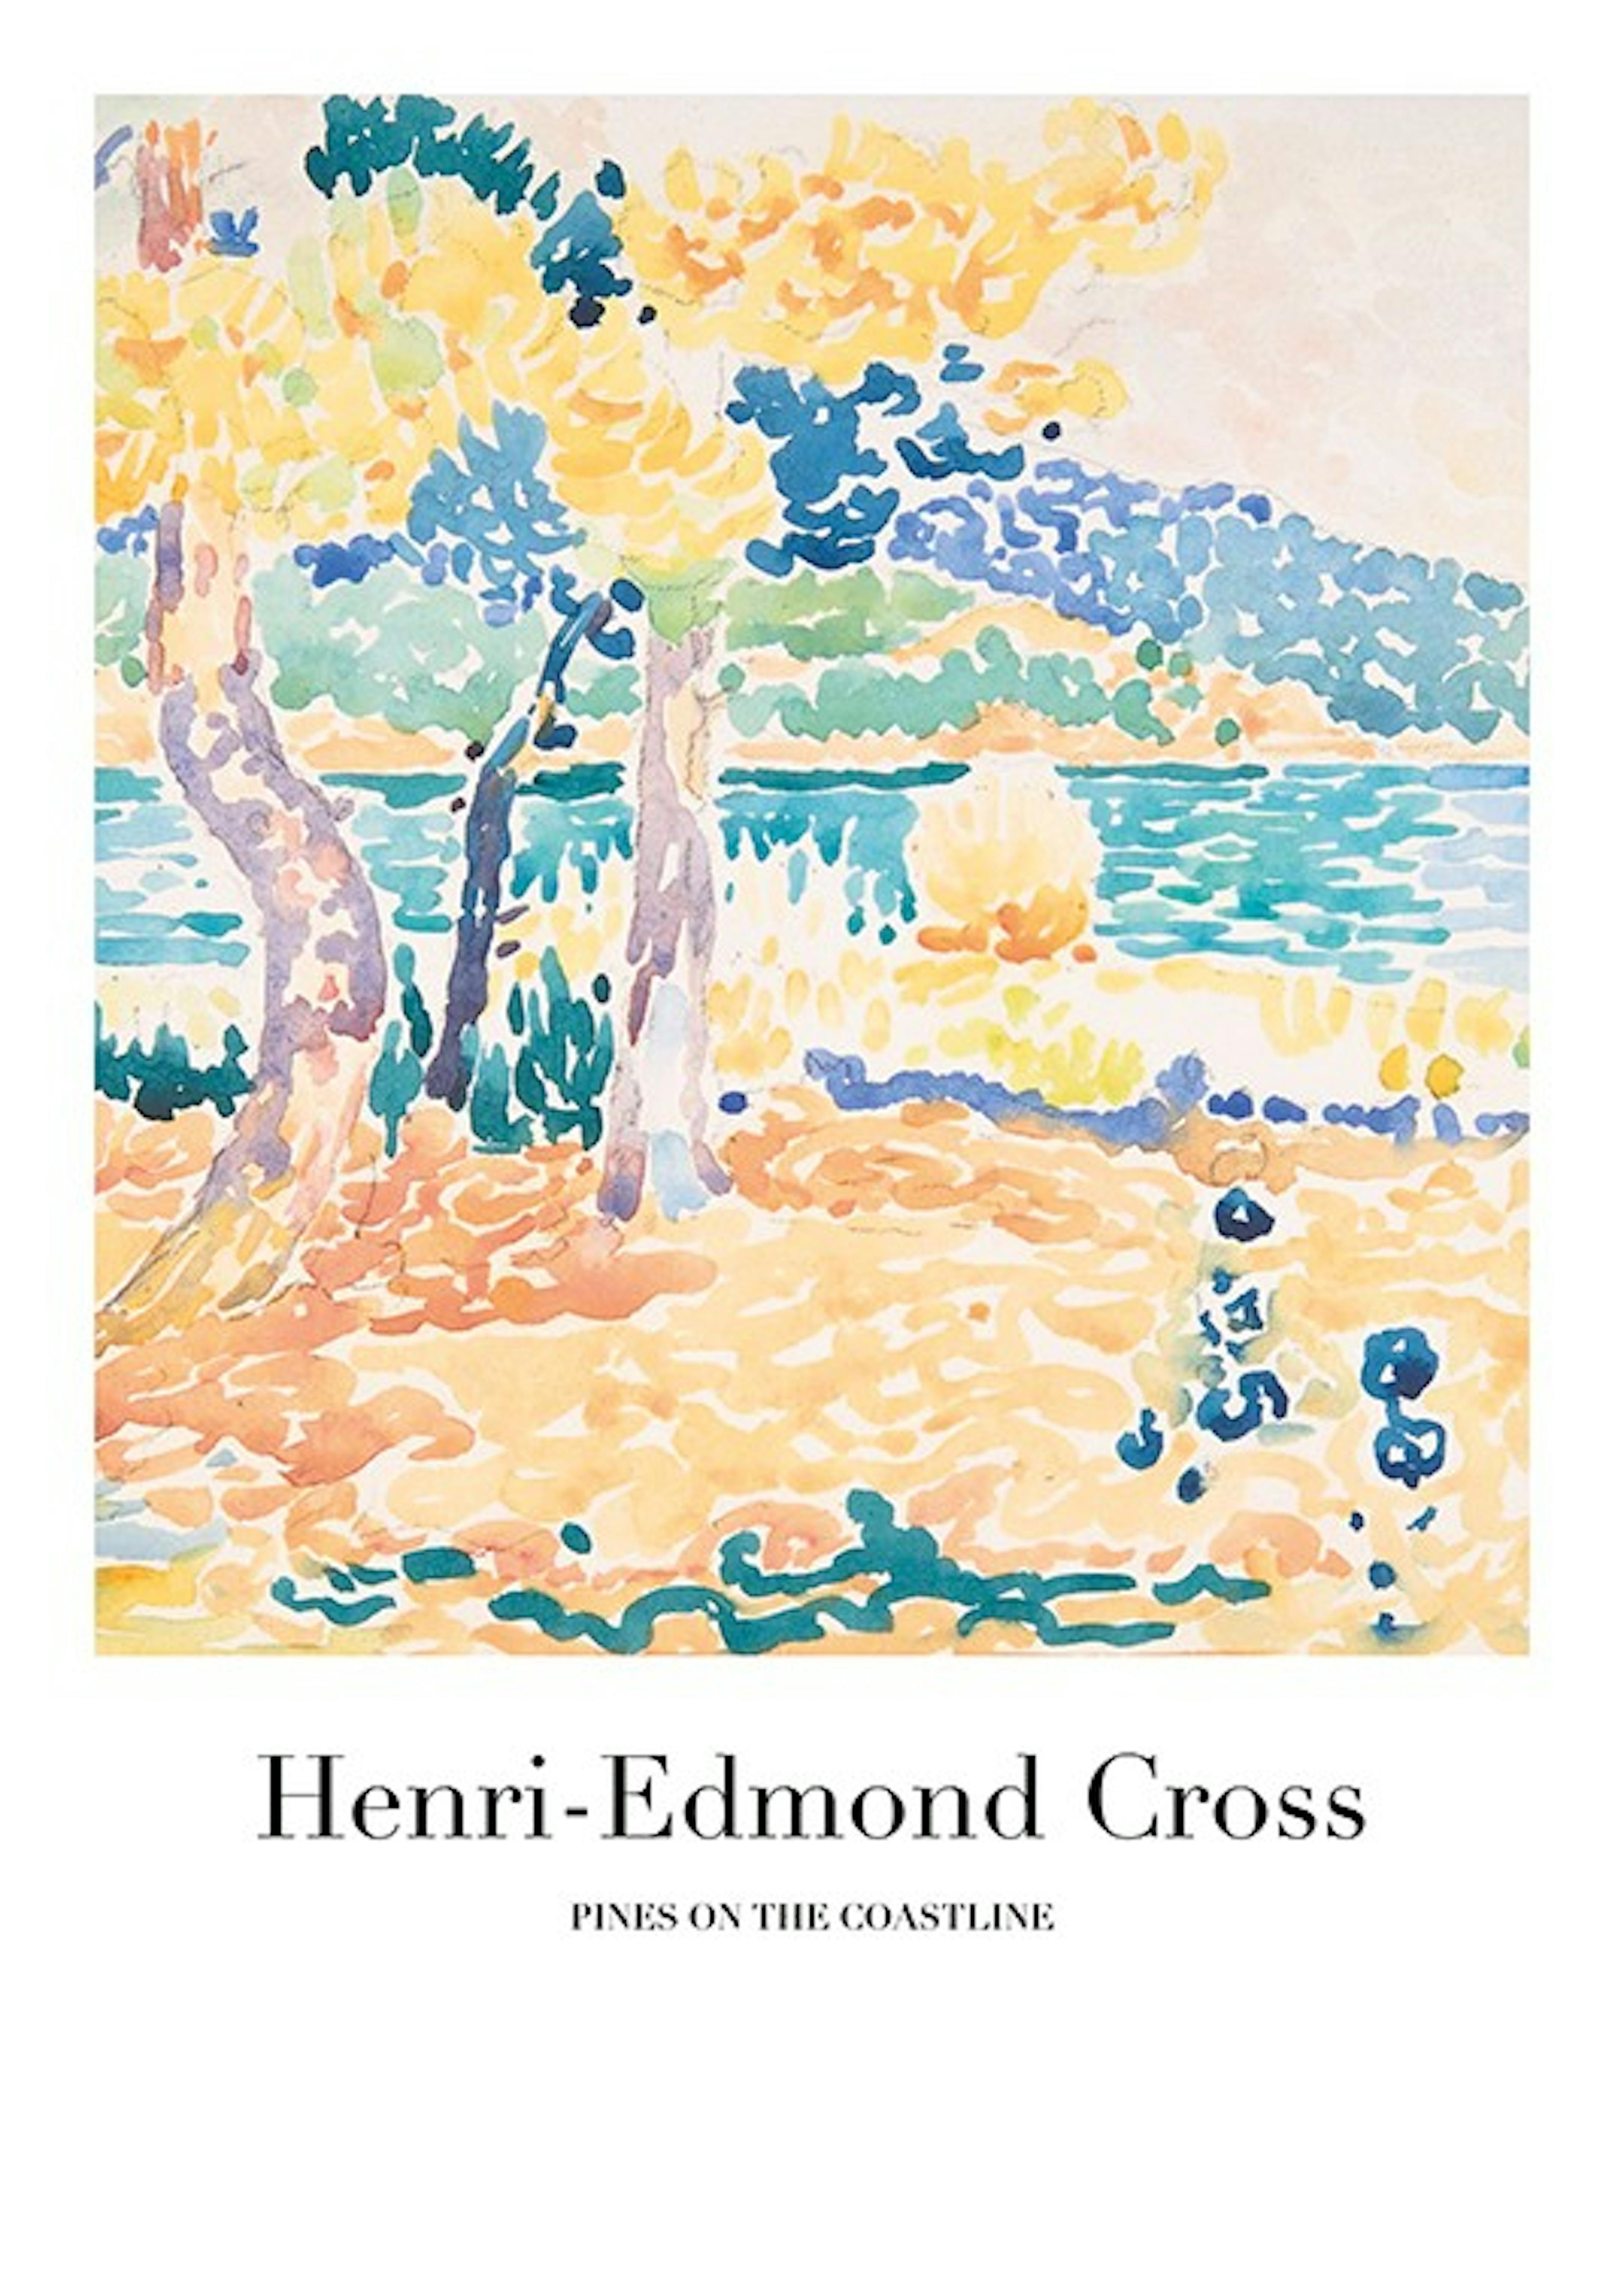 Henri-Edmond Cross - Pines on the Coastline Print